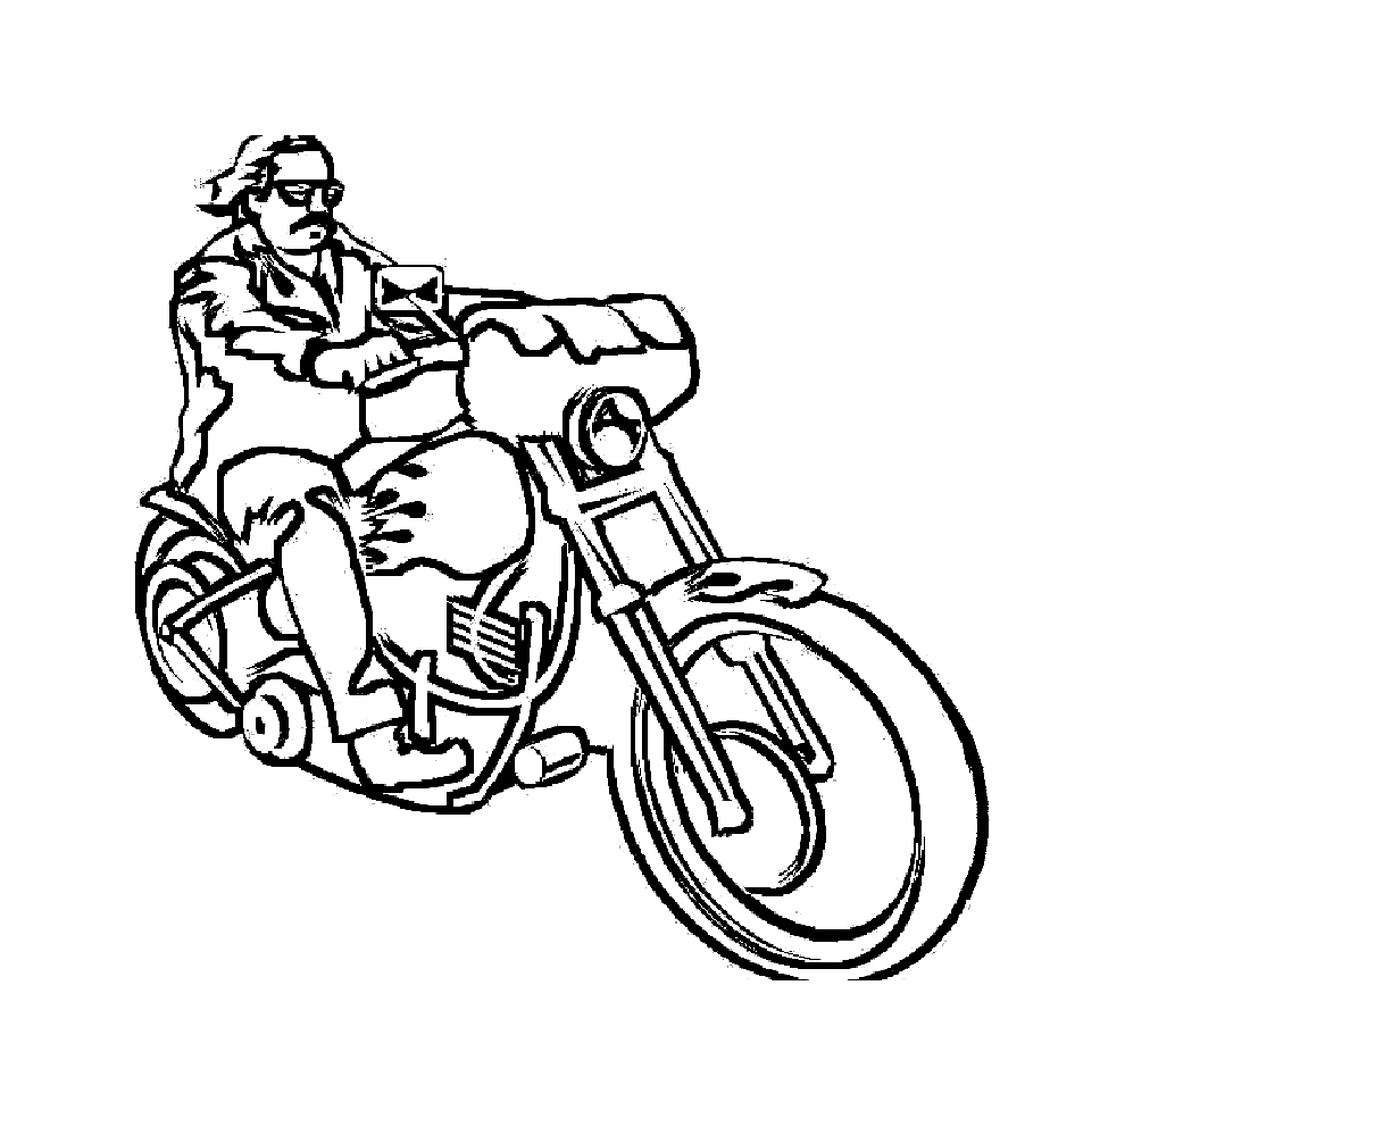  Mujer sentada en una motocicleta 